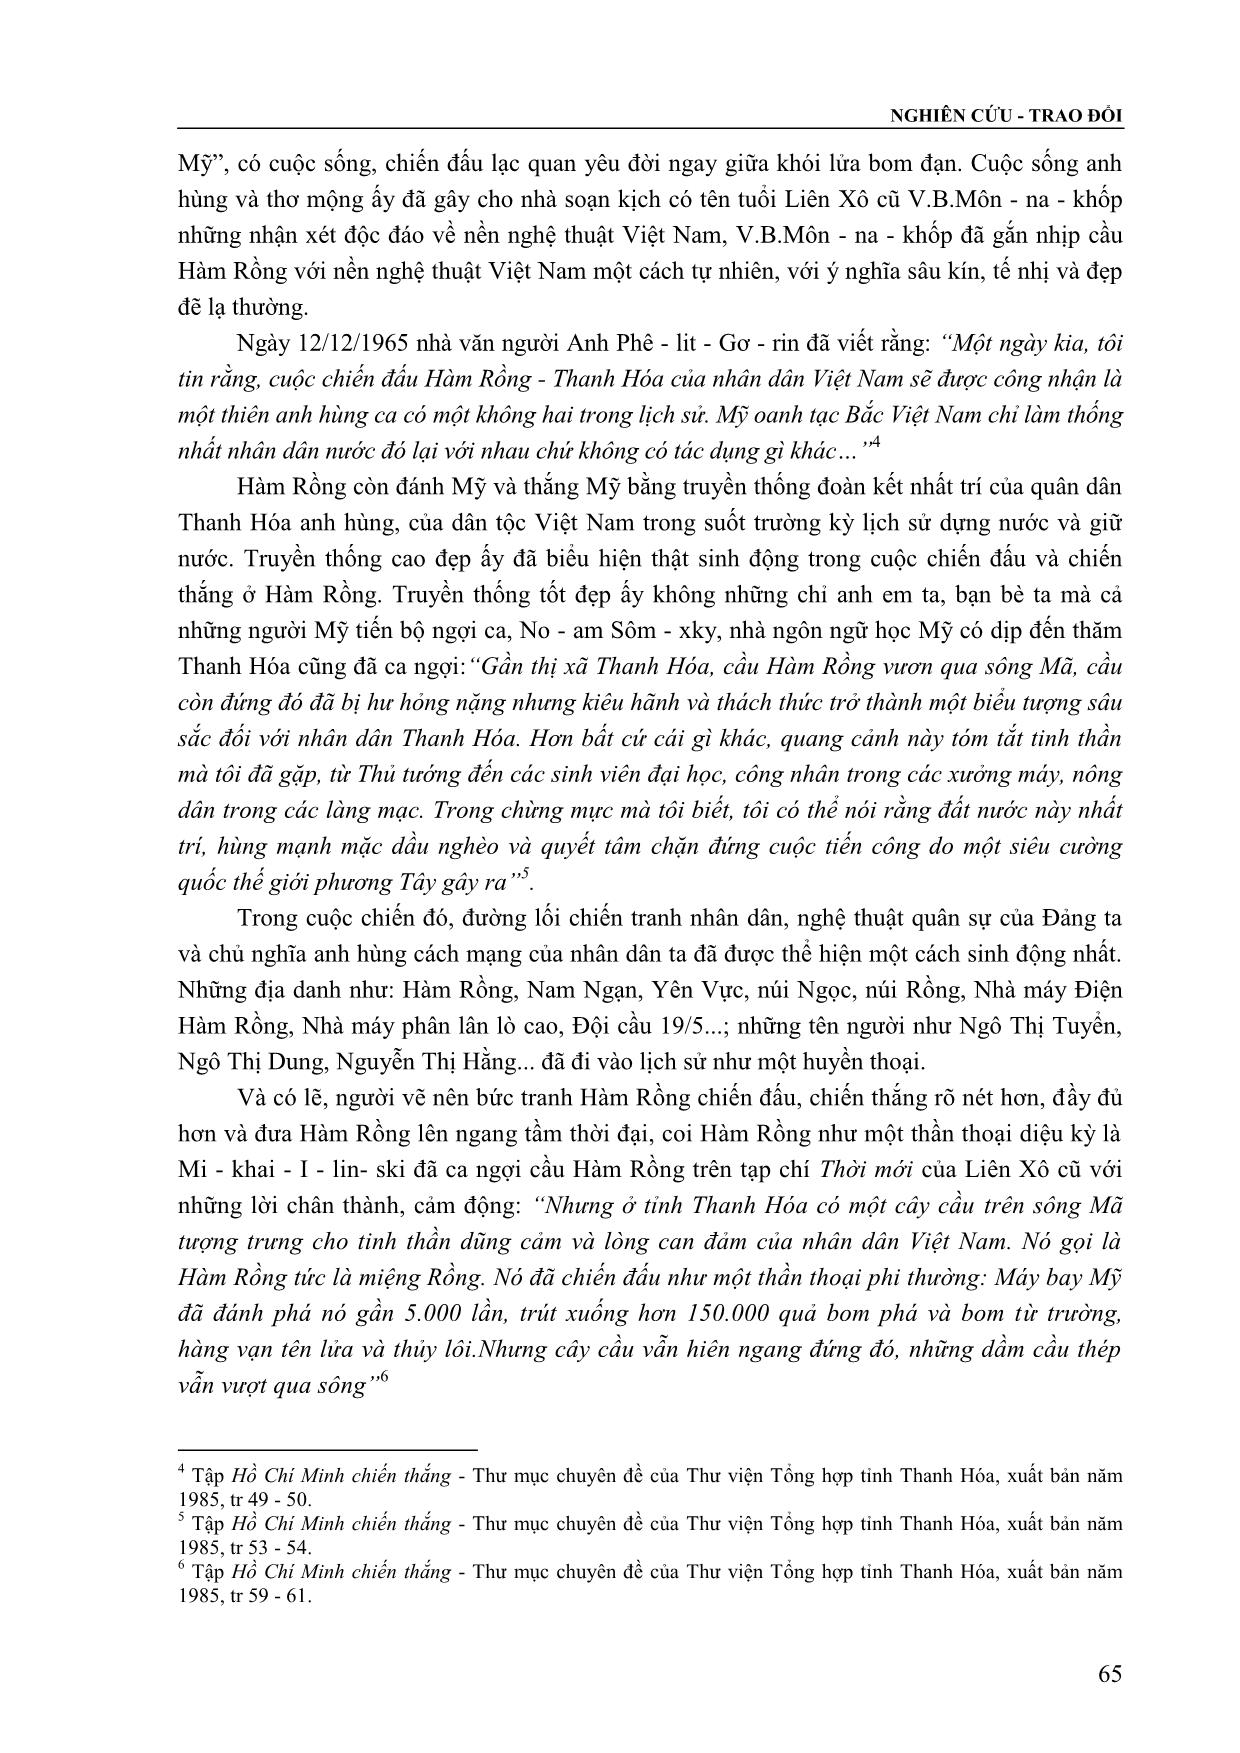 Hàm Rồng ở xứ Thanh trong con mắt của người nước ngoài trang 4